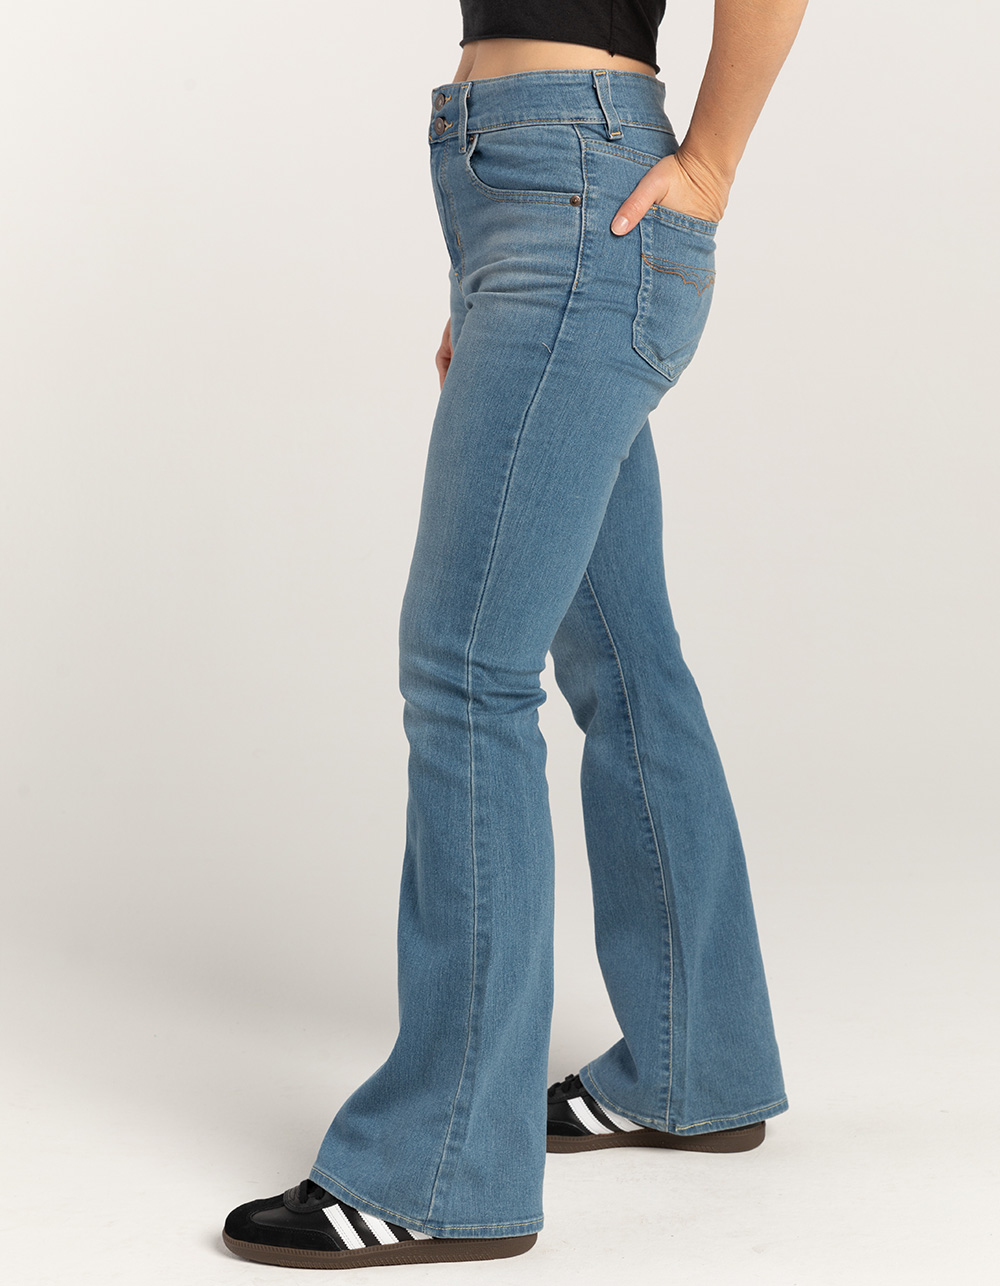 726 Western Flare Women's Jeans - Green